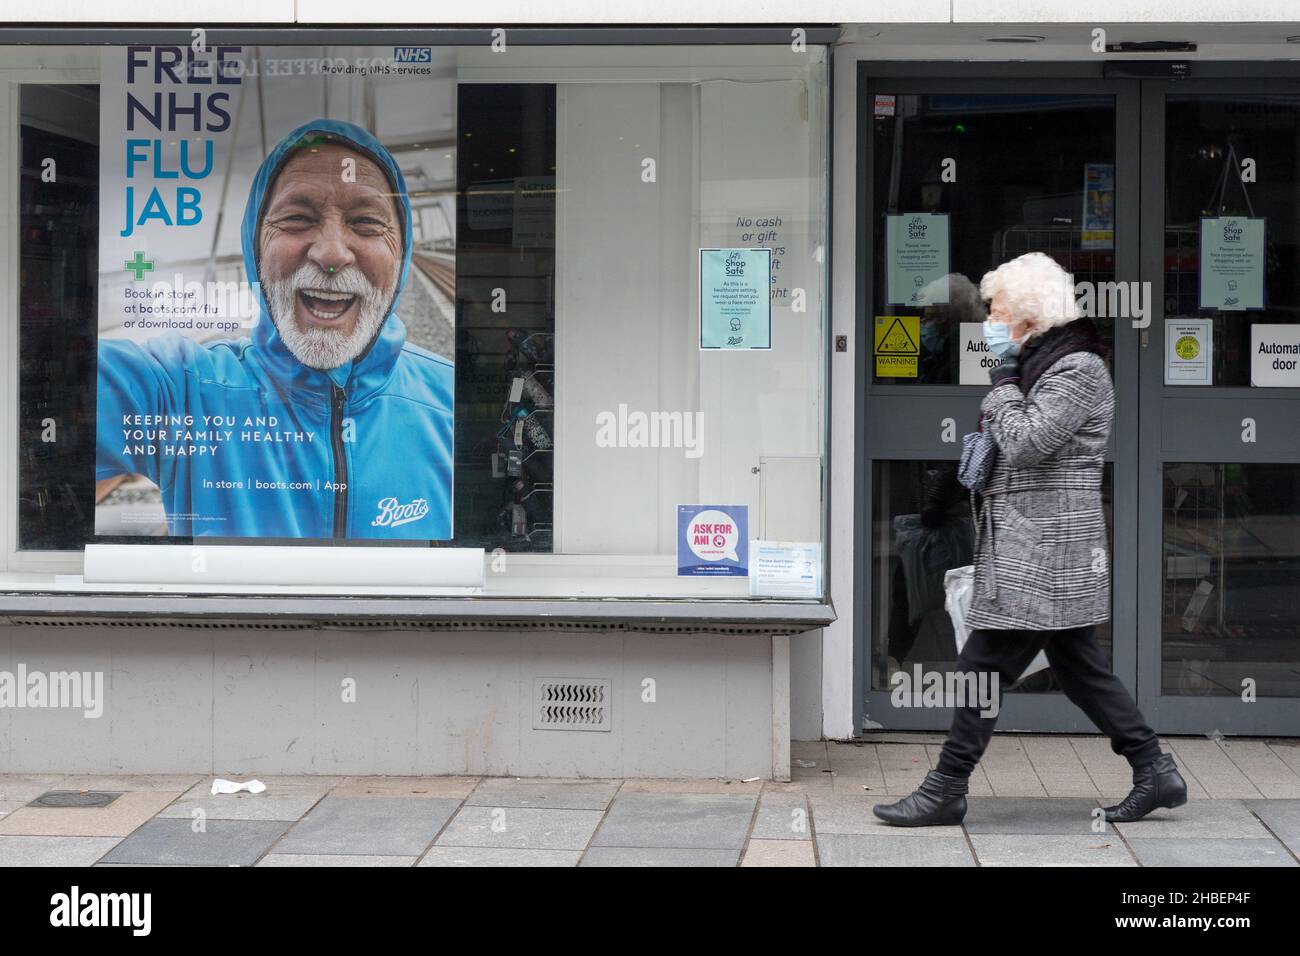 Mujer con cobertura de cara Pasar un cartel para la gripe de invierno jab, gratis para grupos de personas elegibles Bexley Londres Inglaterra Foto de stock